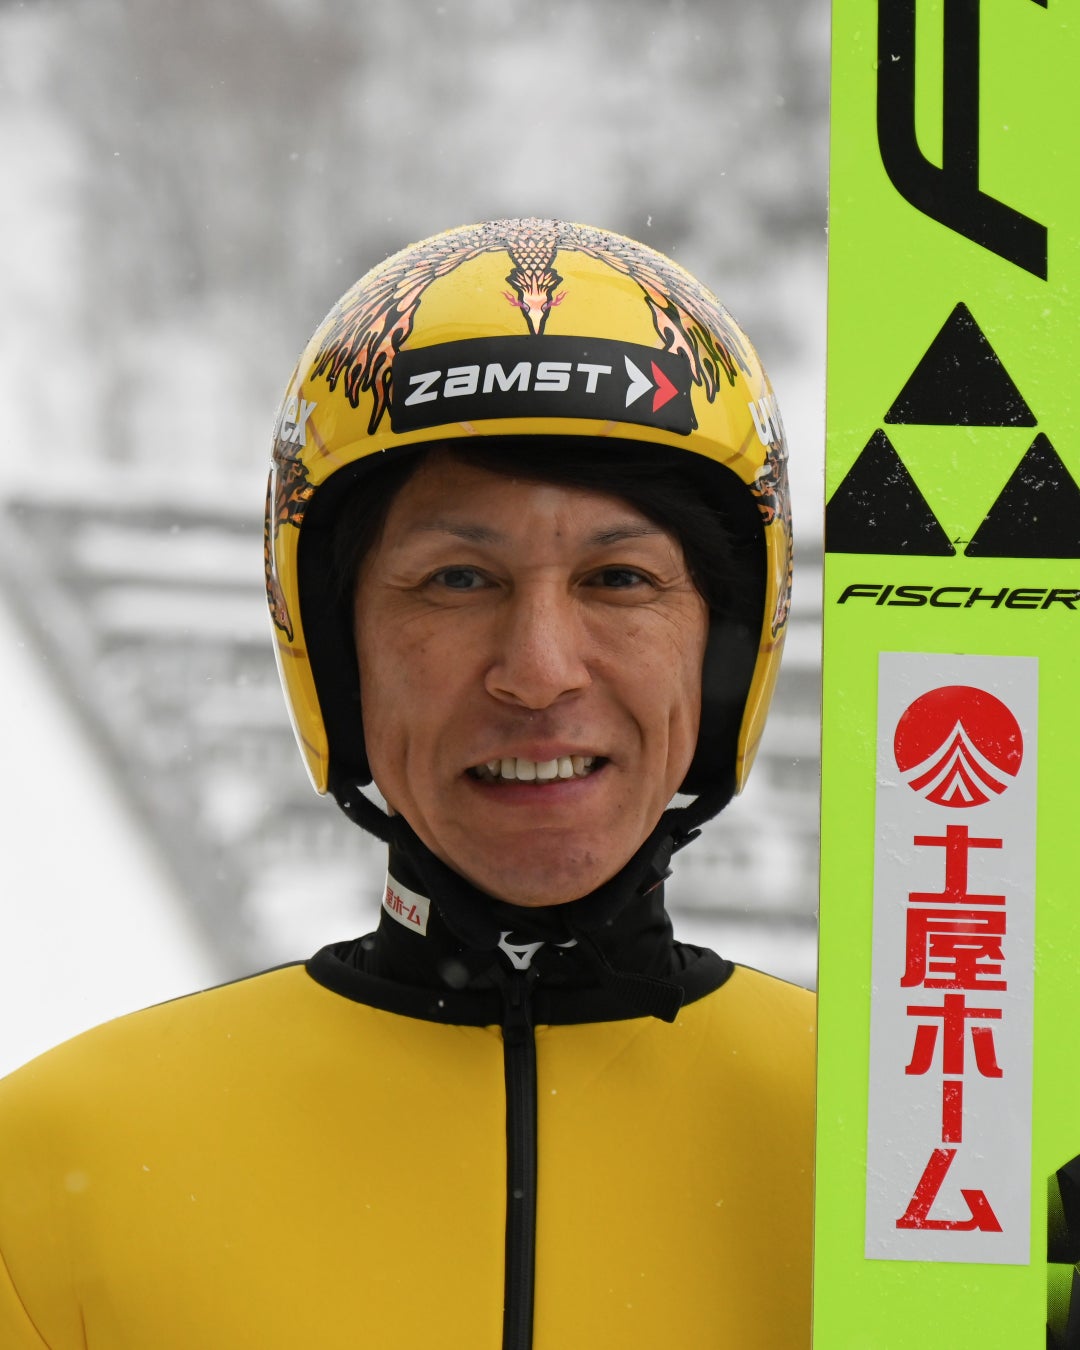 ZAMSTがスキージャンパー葛西紀明選手とスポンサーシップ契約を締結